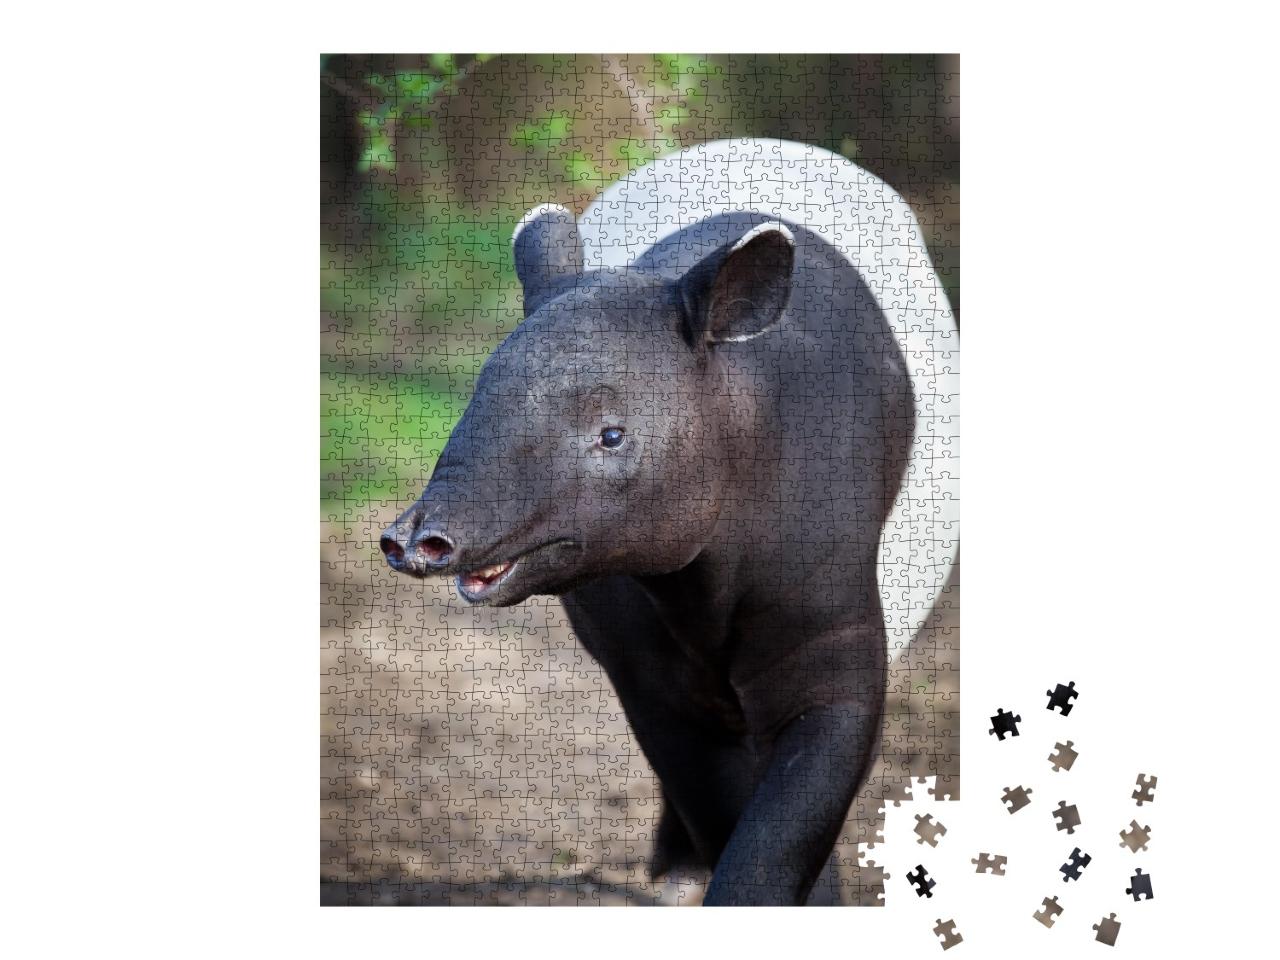 Puzzle de 1000 pièces « Gros plan sur un tapir malais »